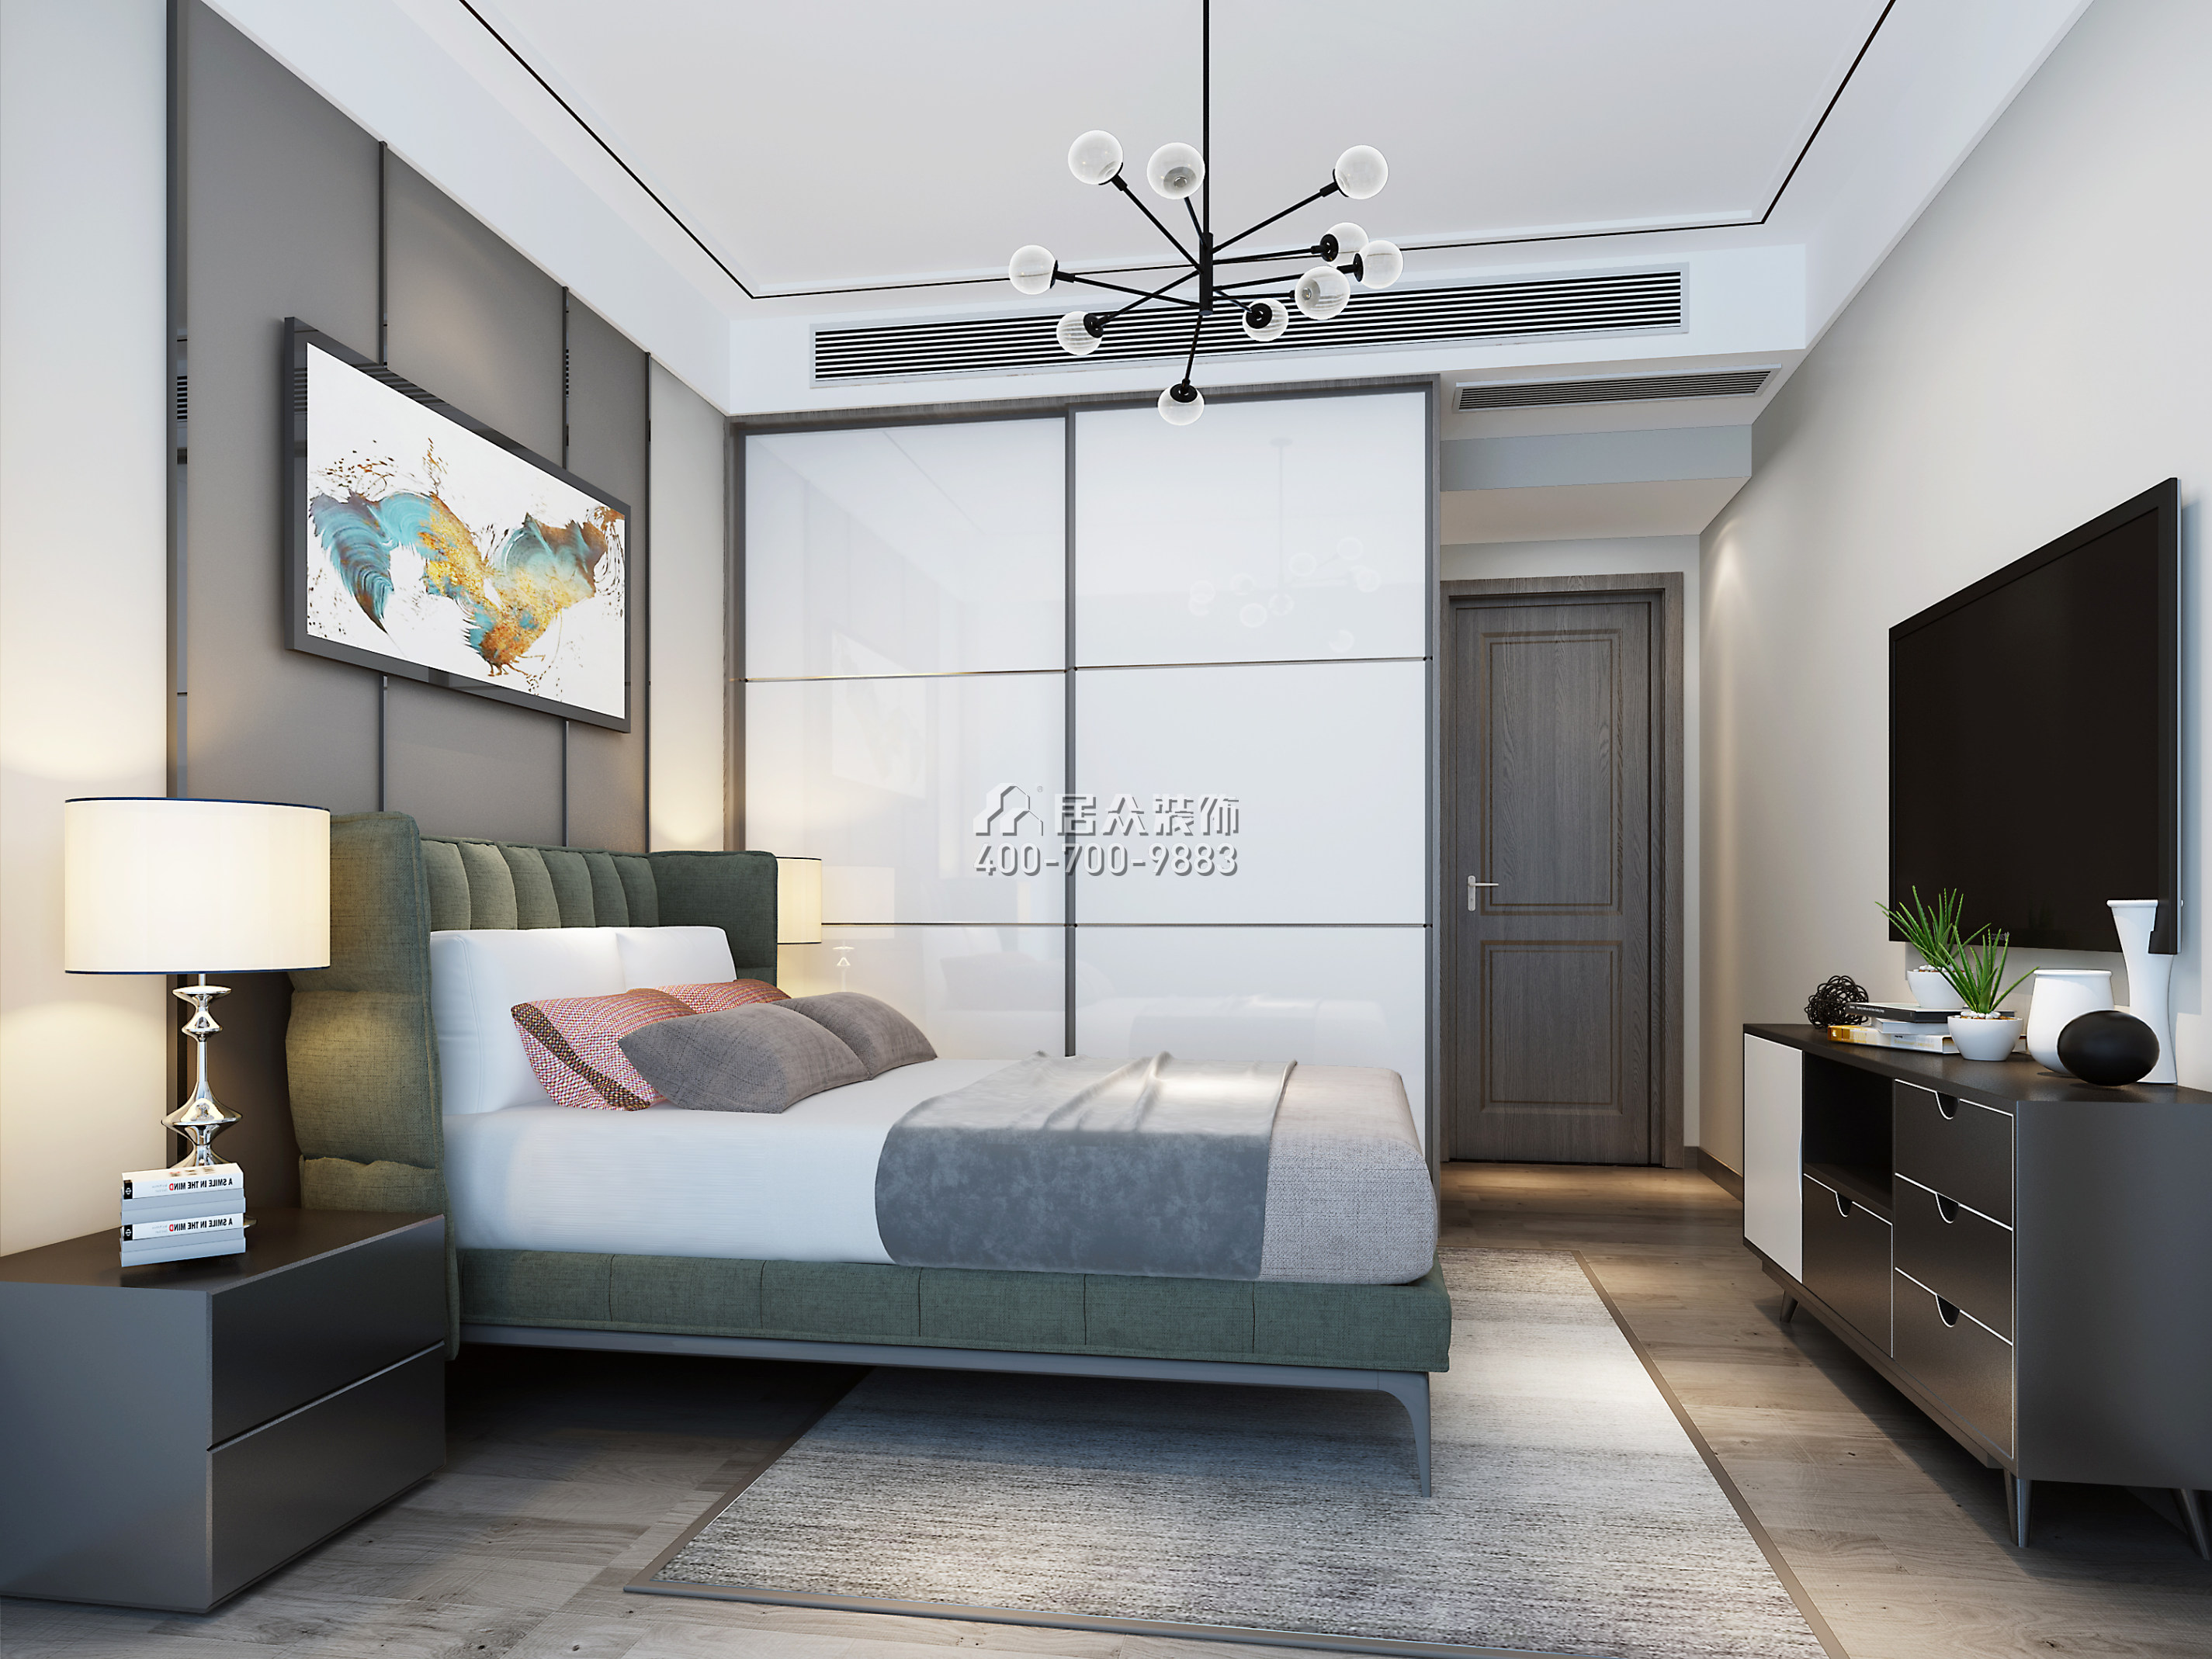 联投东方华府二期105平方米现代简约风格平层户型卧室装修效果图